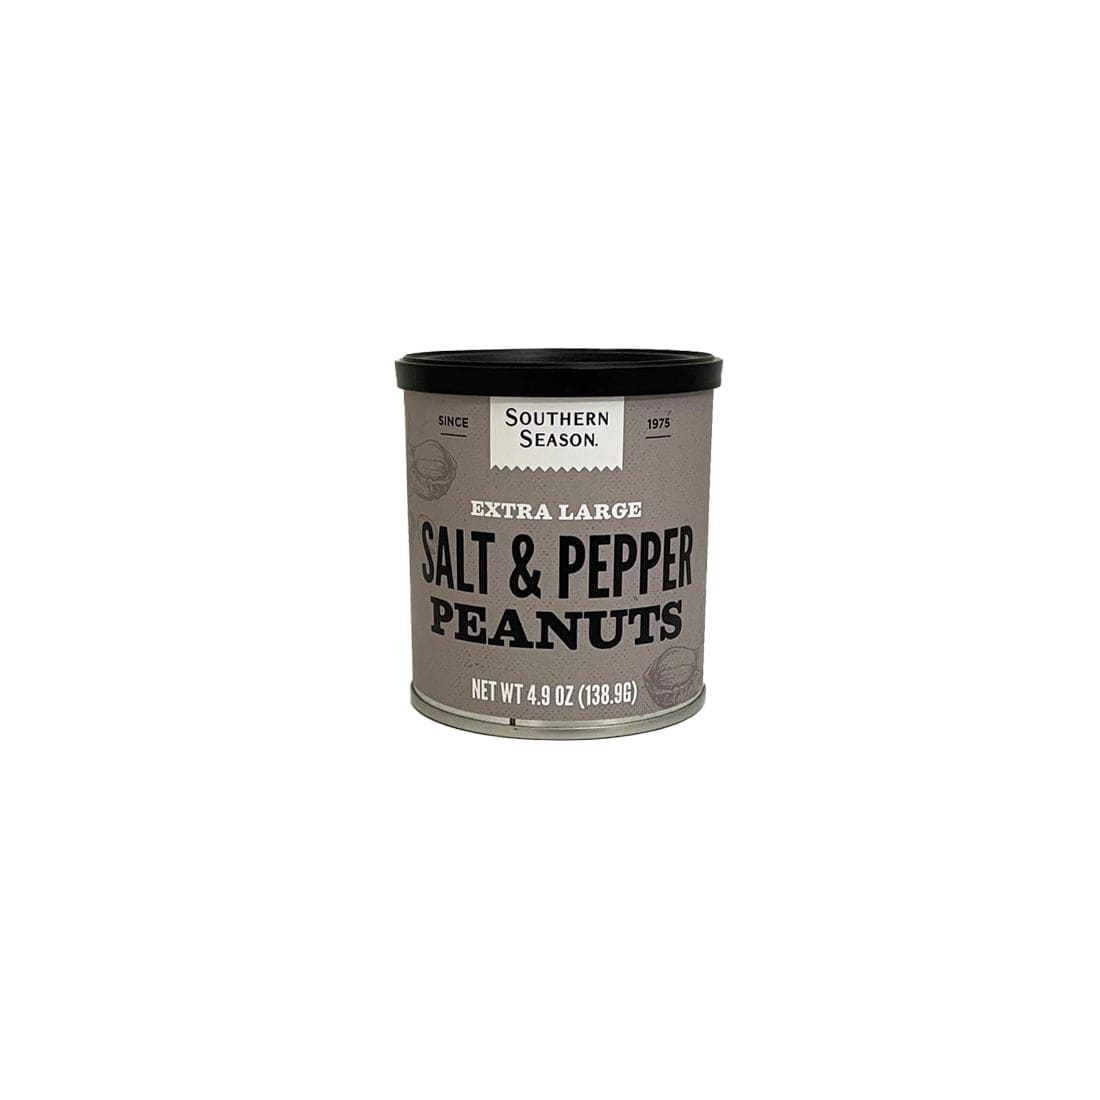 Southern Season Southern Season Salt & Pepper Peanuts 4.9 oz